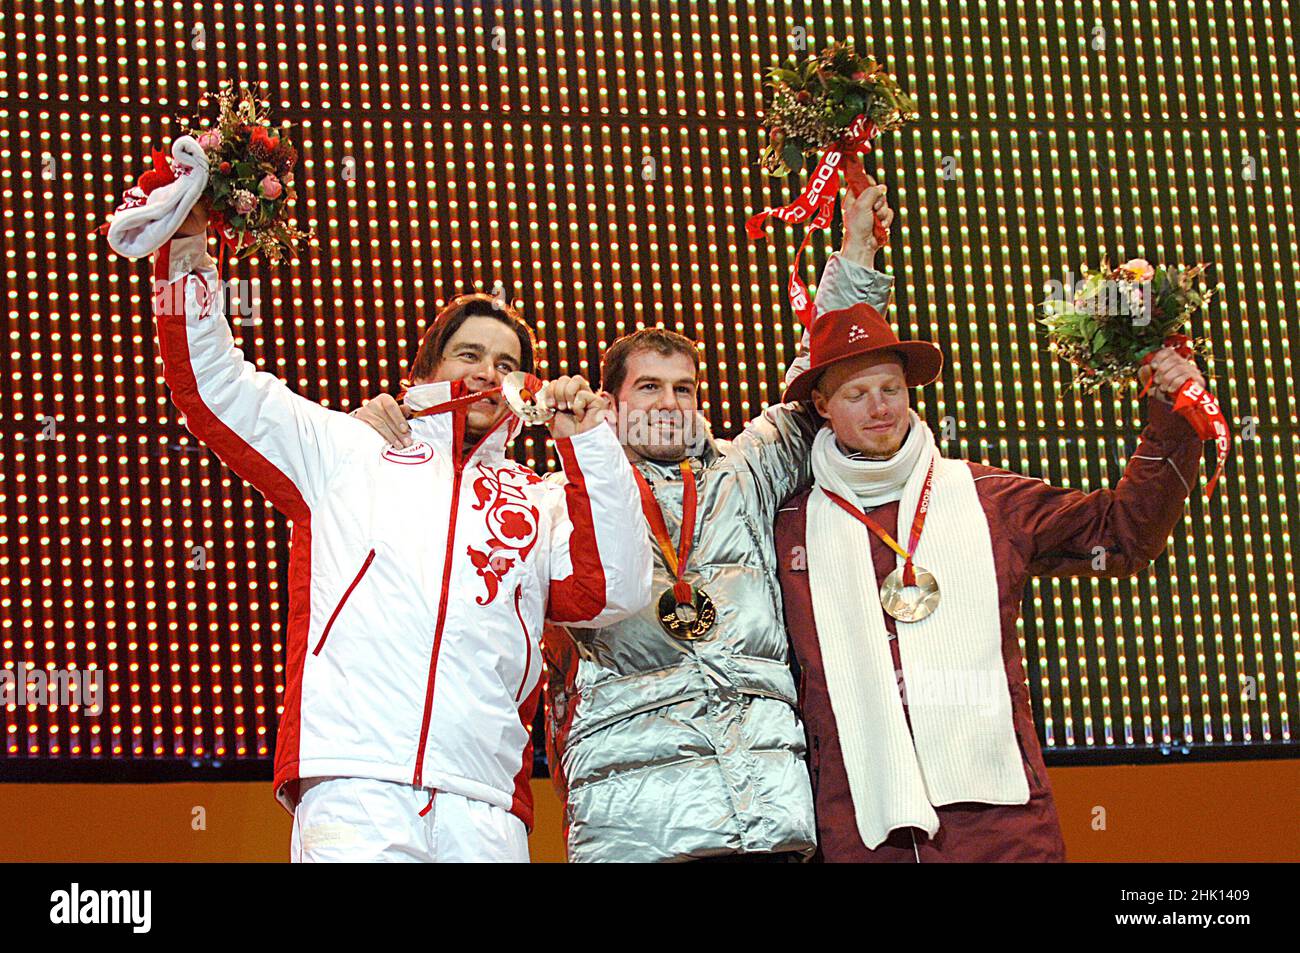 Turin Italien 2006-02-12: Olympische Winterspiele 2006 in Turin, Siegerehrung des Rennrodeln-Wettbewerbs, Demtschenko Albert (Rus), Zoeggeler Amin (Ita), Rubenis Martins (Lat) Stockfoto